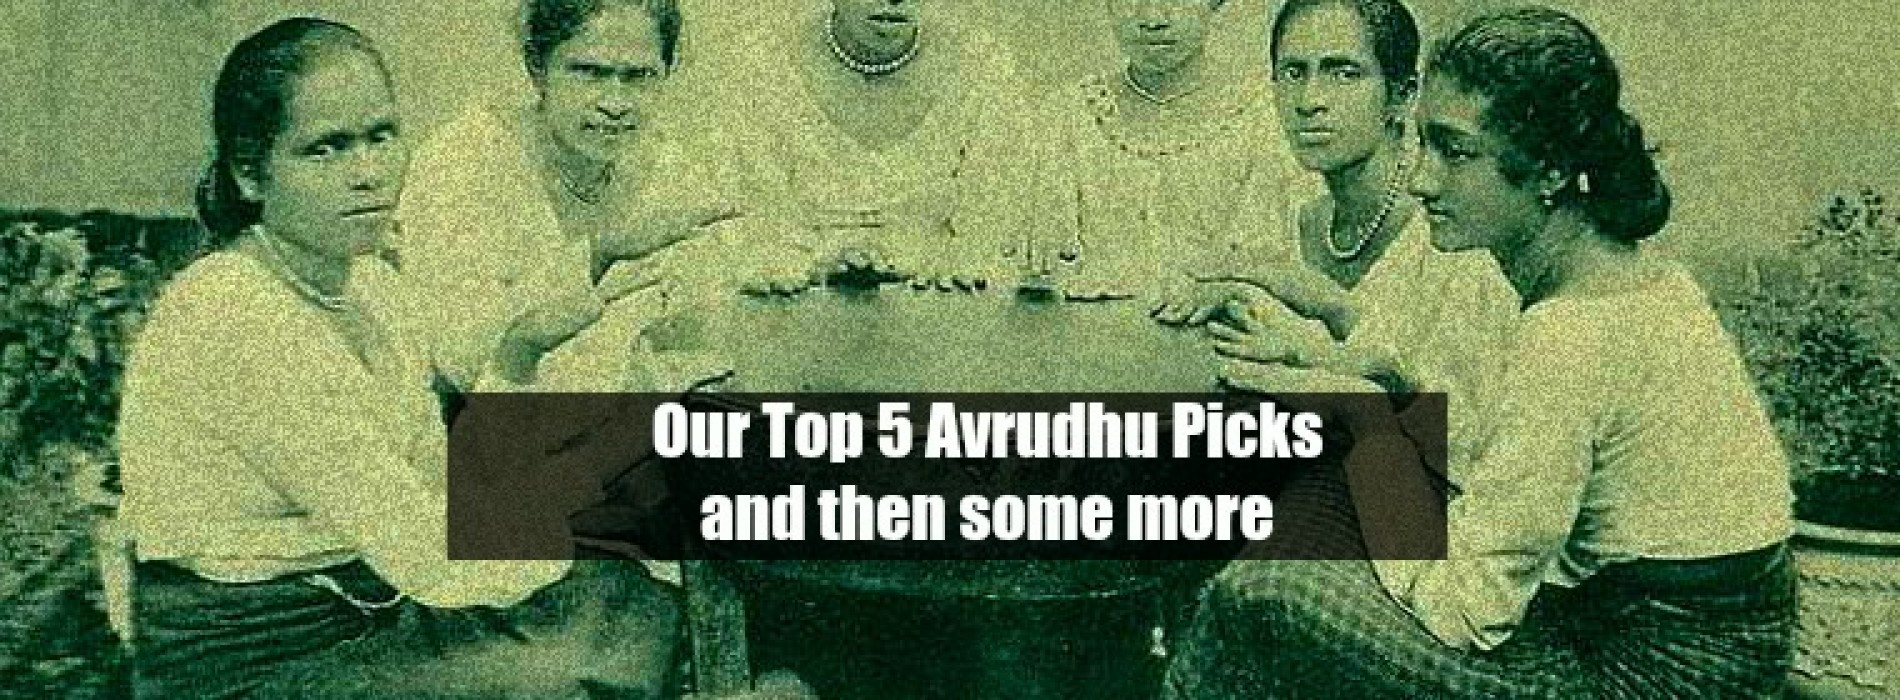 Decibel’s Avrudhu Top 5 & More